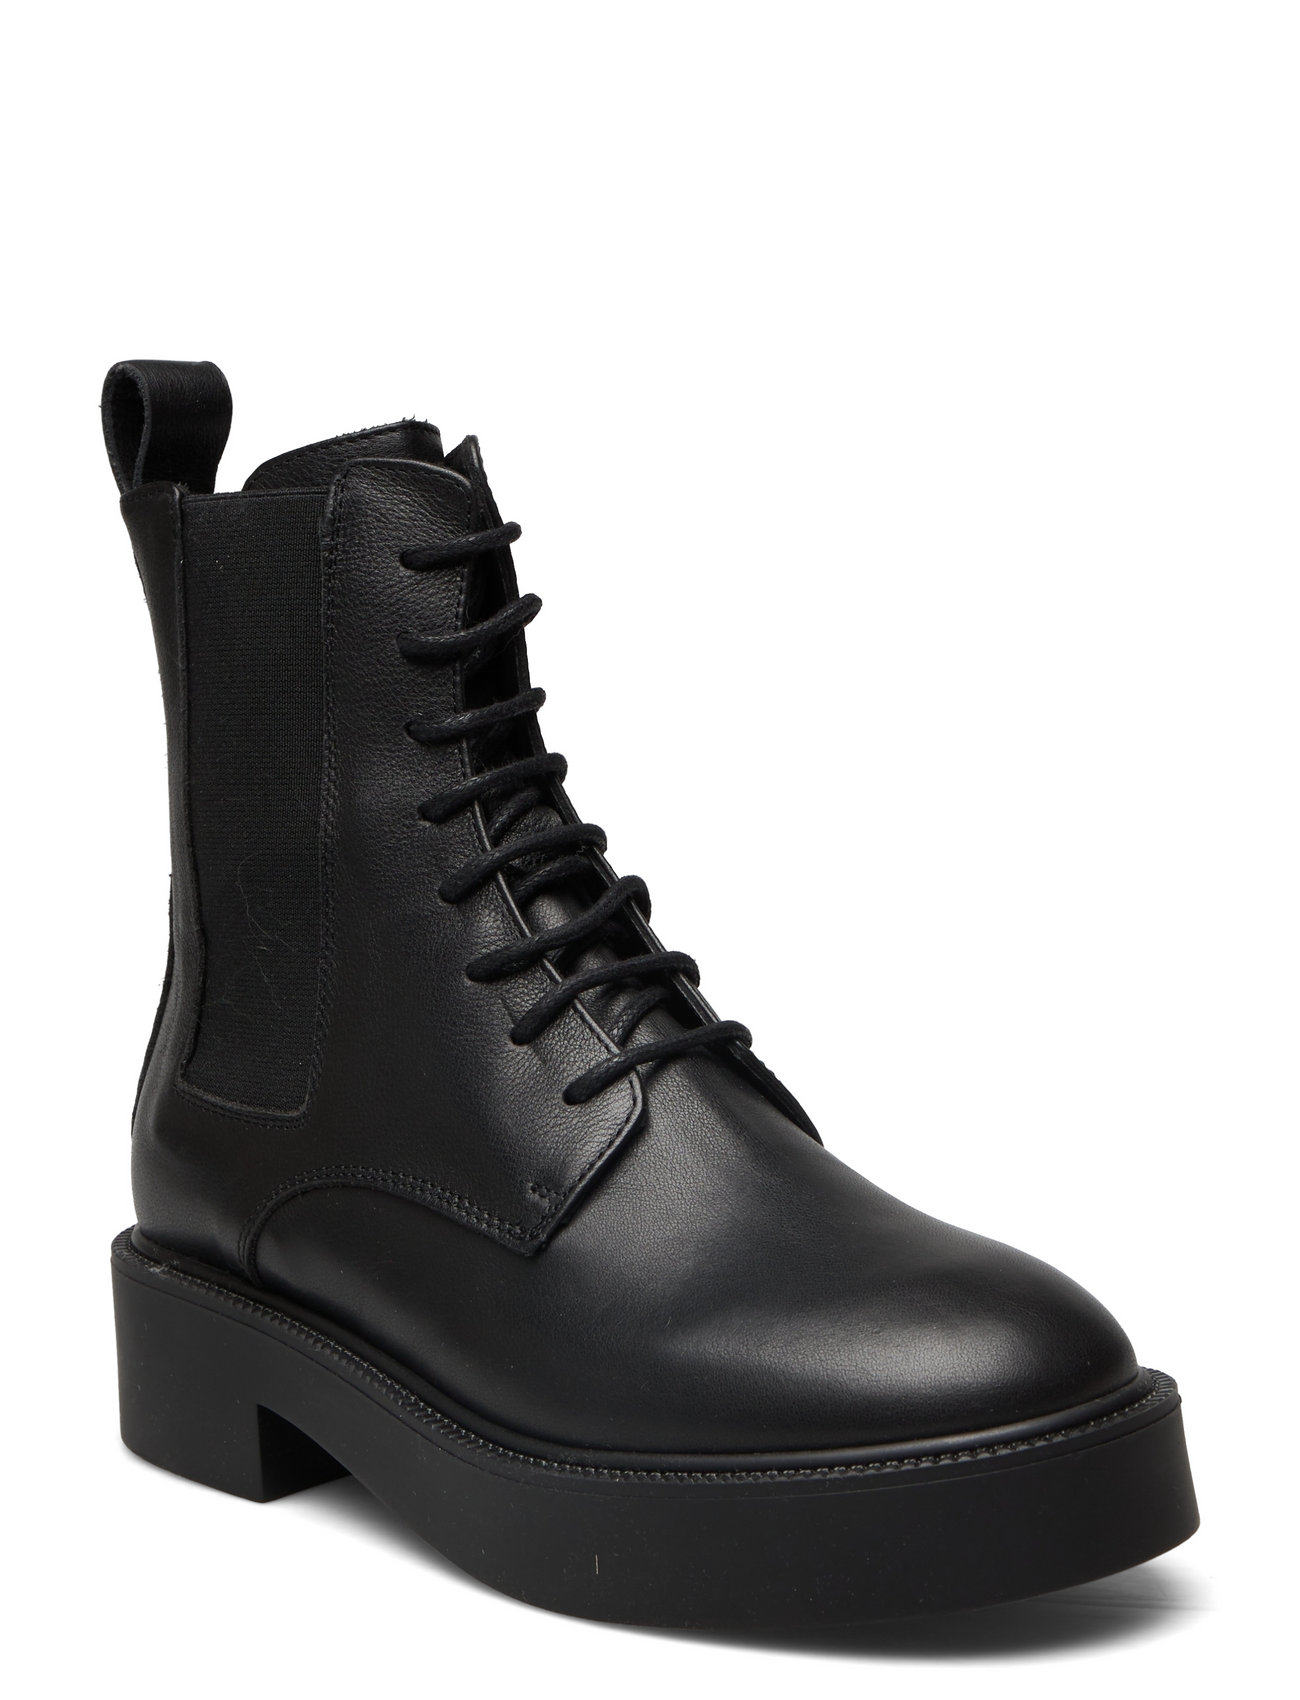 "Copenhagen Studios" "Cph576 Shoes Boots Ankle Laced Black Copenhagen